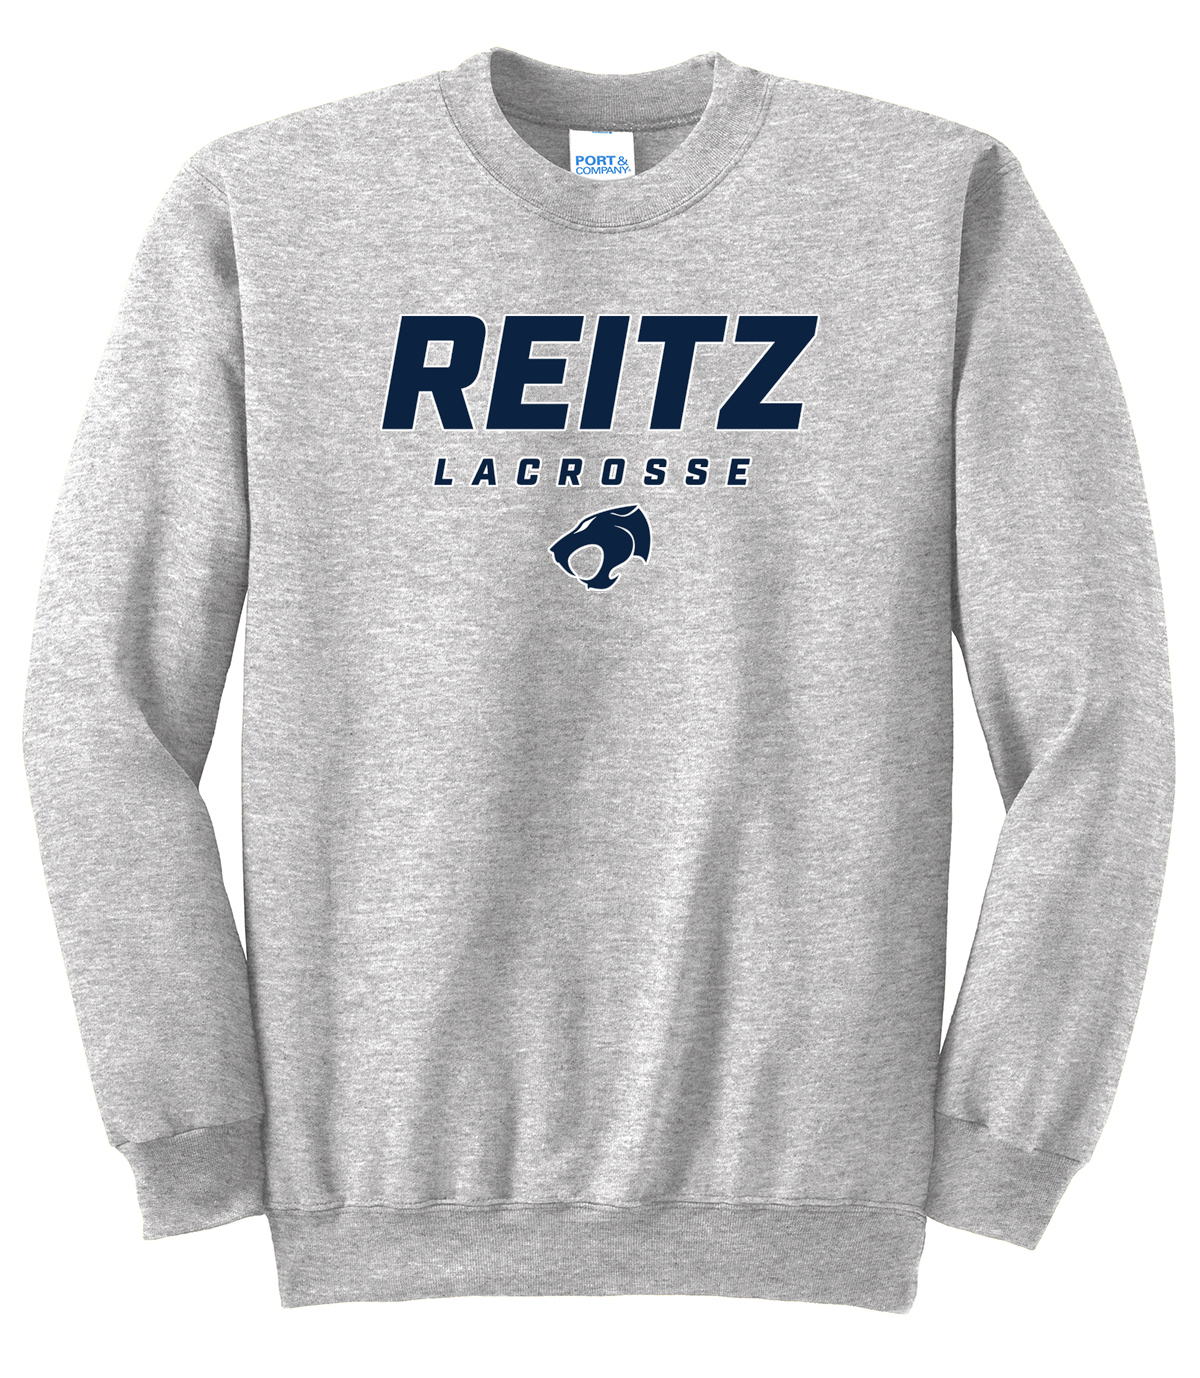 Reitz Lacrosse Ash Crew Neck Sweater